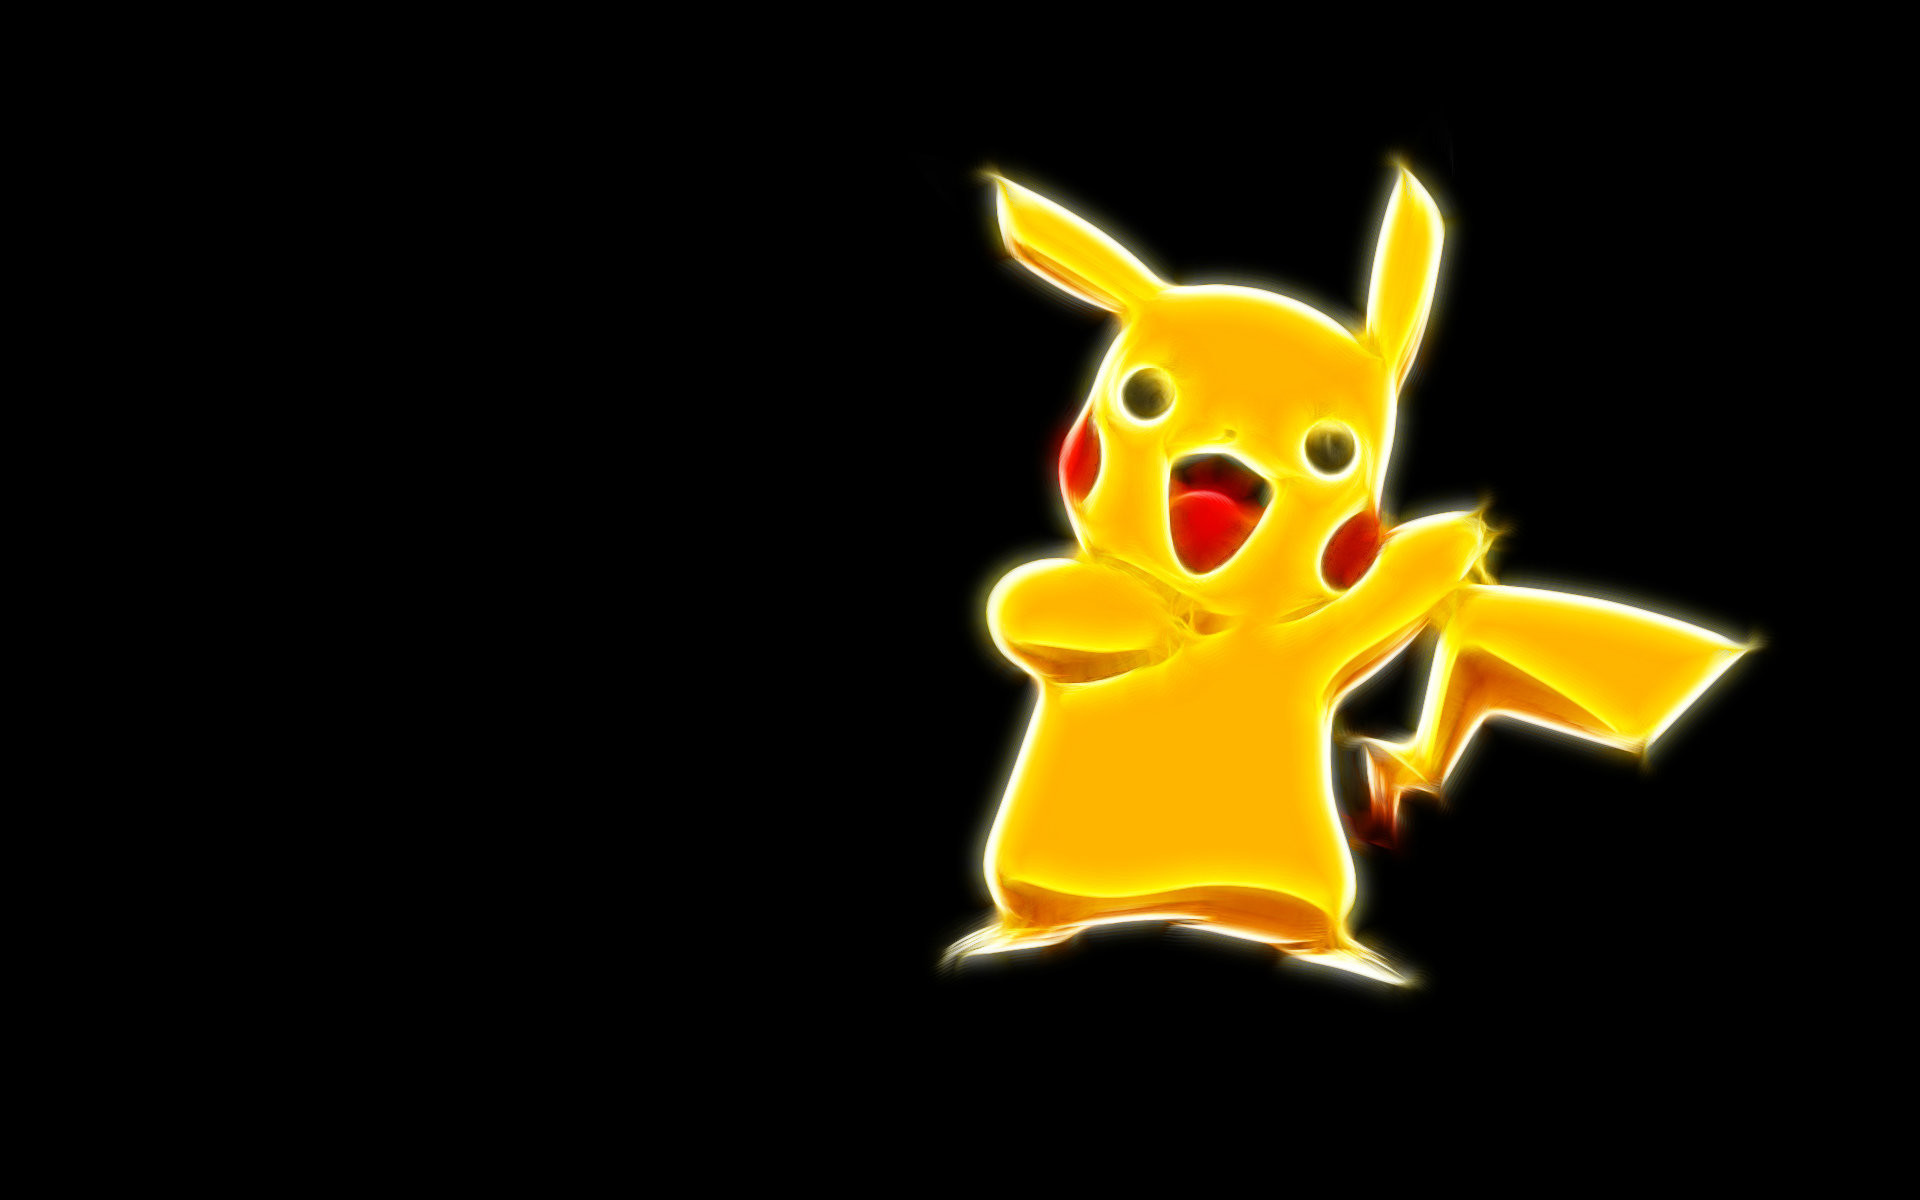 1920x1200 Pikachu Pokemon HD Image For Desktop